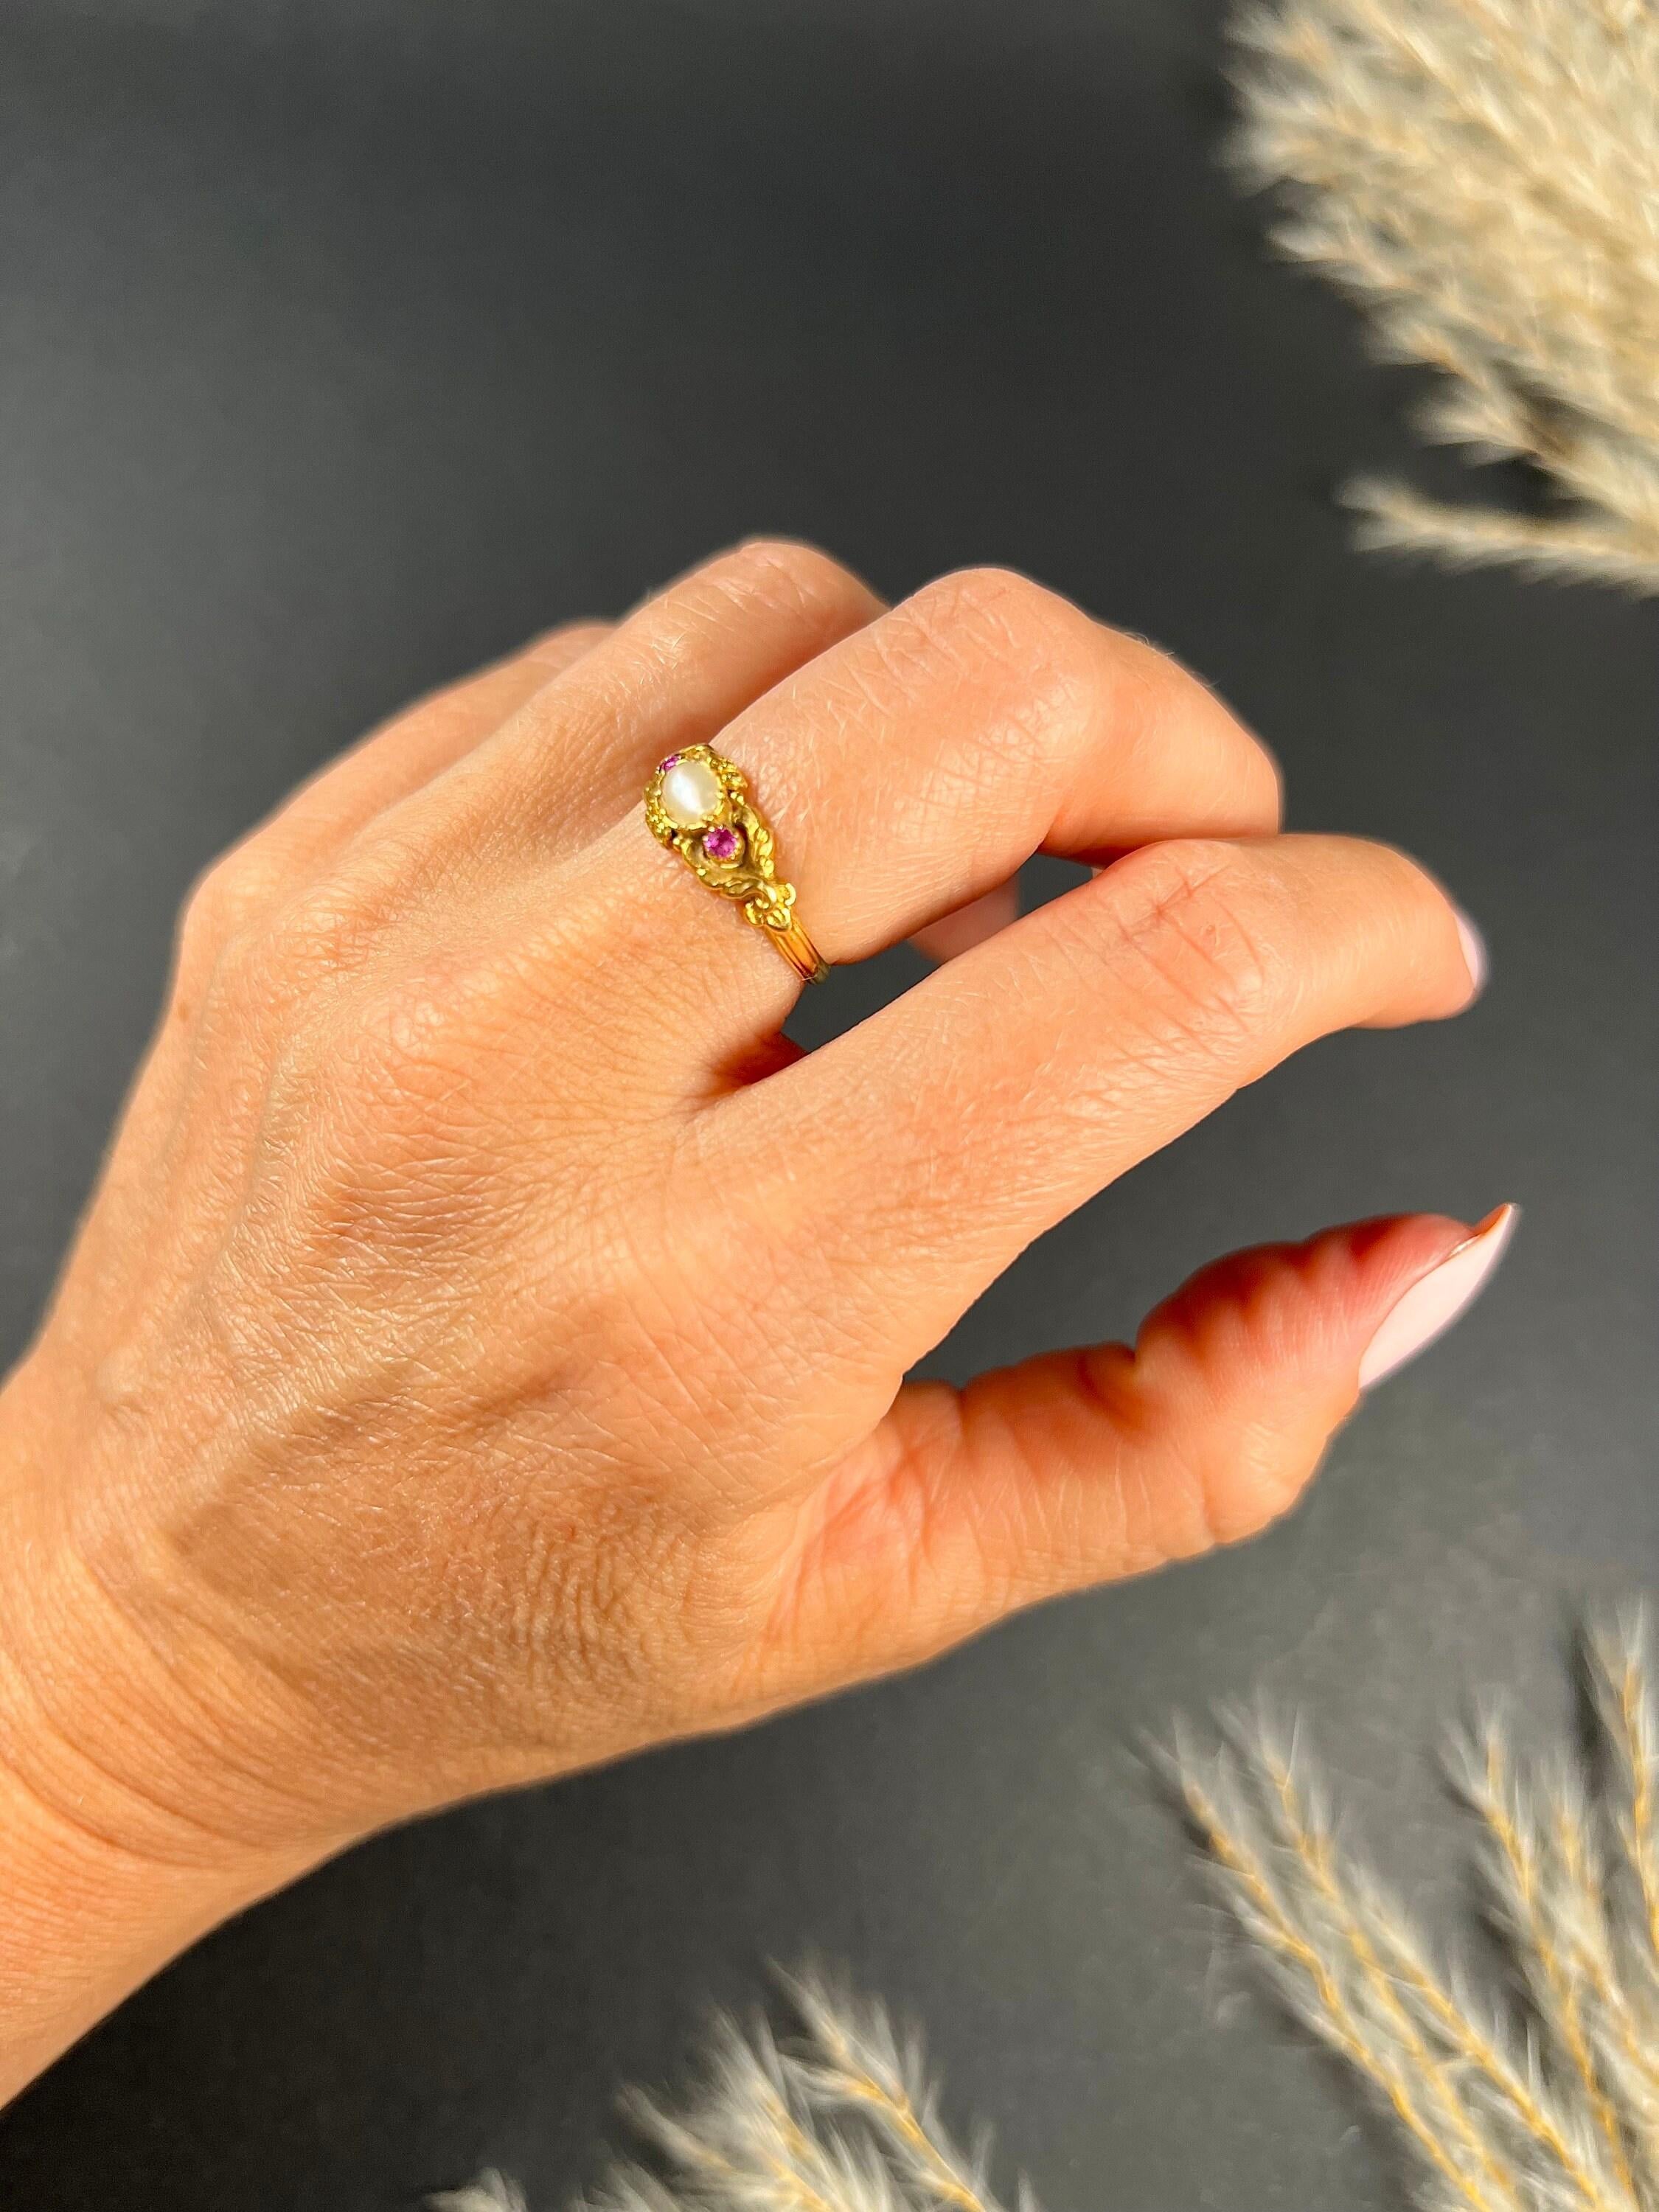 Antiker Ring mit Perle und Rubin

15ct Gold Geprüft 

CIRCA 1880

Hübscher, viktorianischer Goldring. Mit einer schönen, natürlichen Perle in der Mitte und zwei prächtigen farbigen Rubinen. Der Ring ist aus fabelhaftem Gelbgold und mit